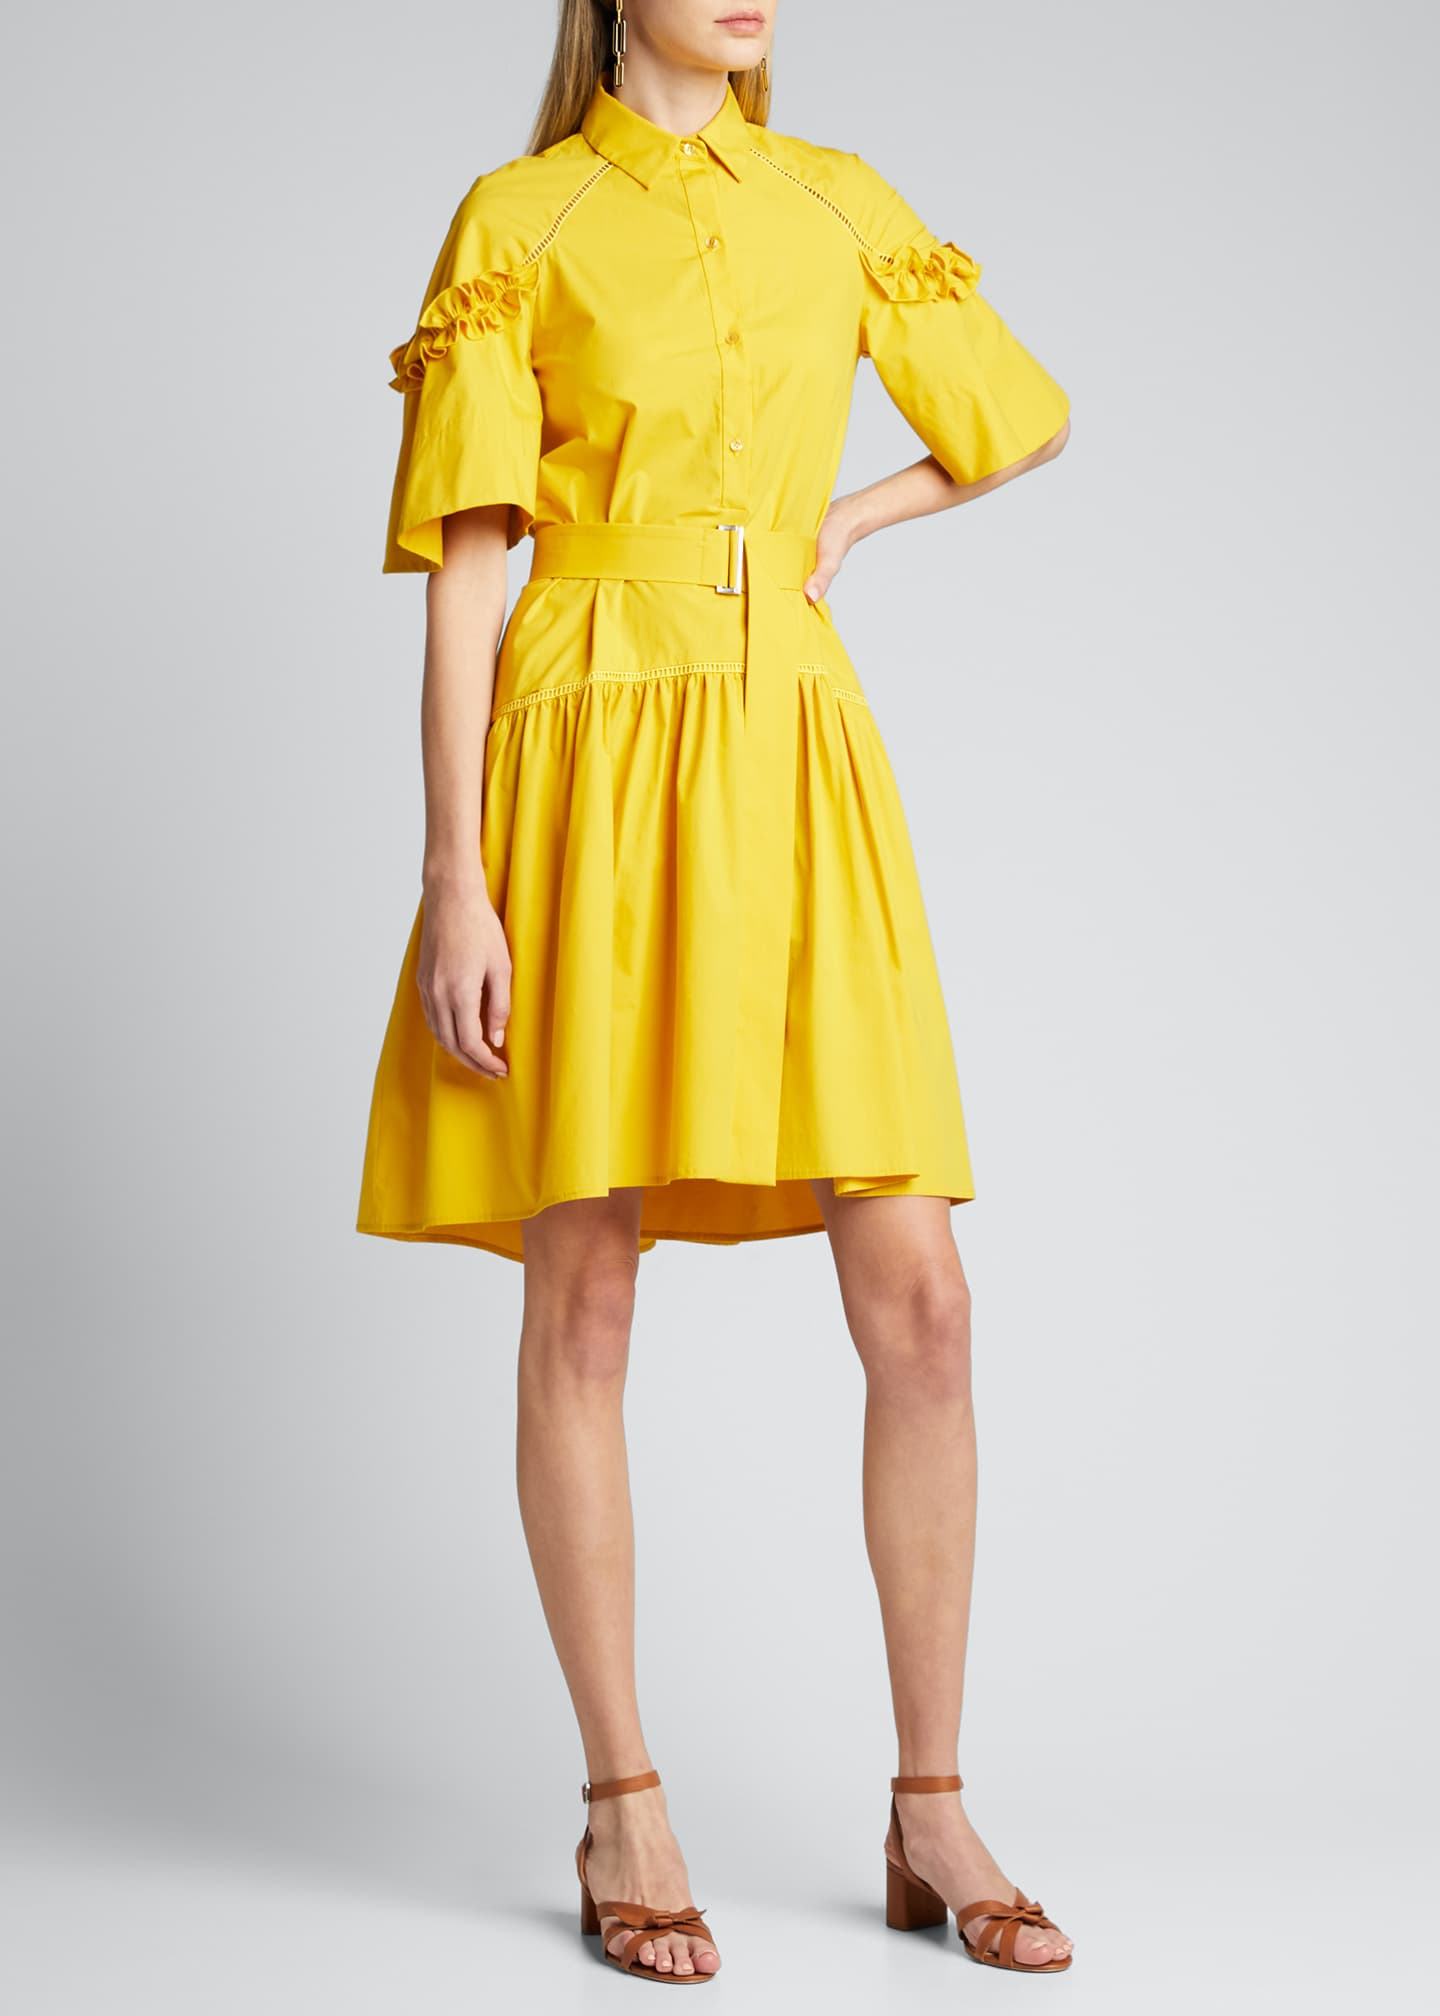 Lela Rose Ruffle-Sleeve Shirt Dress - Bergdorf Goodman